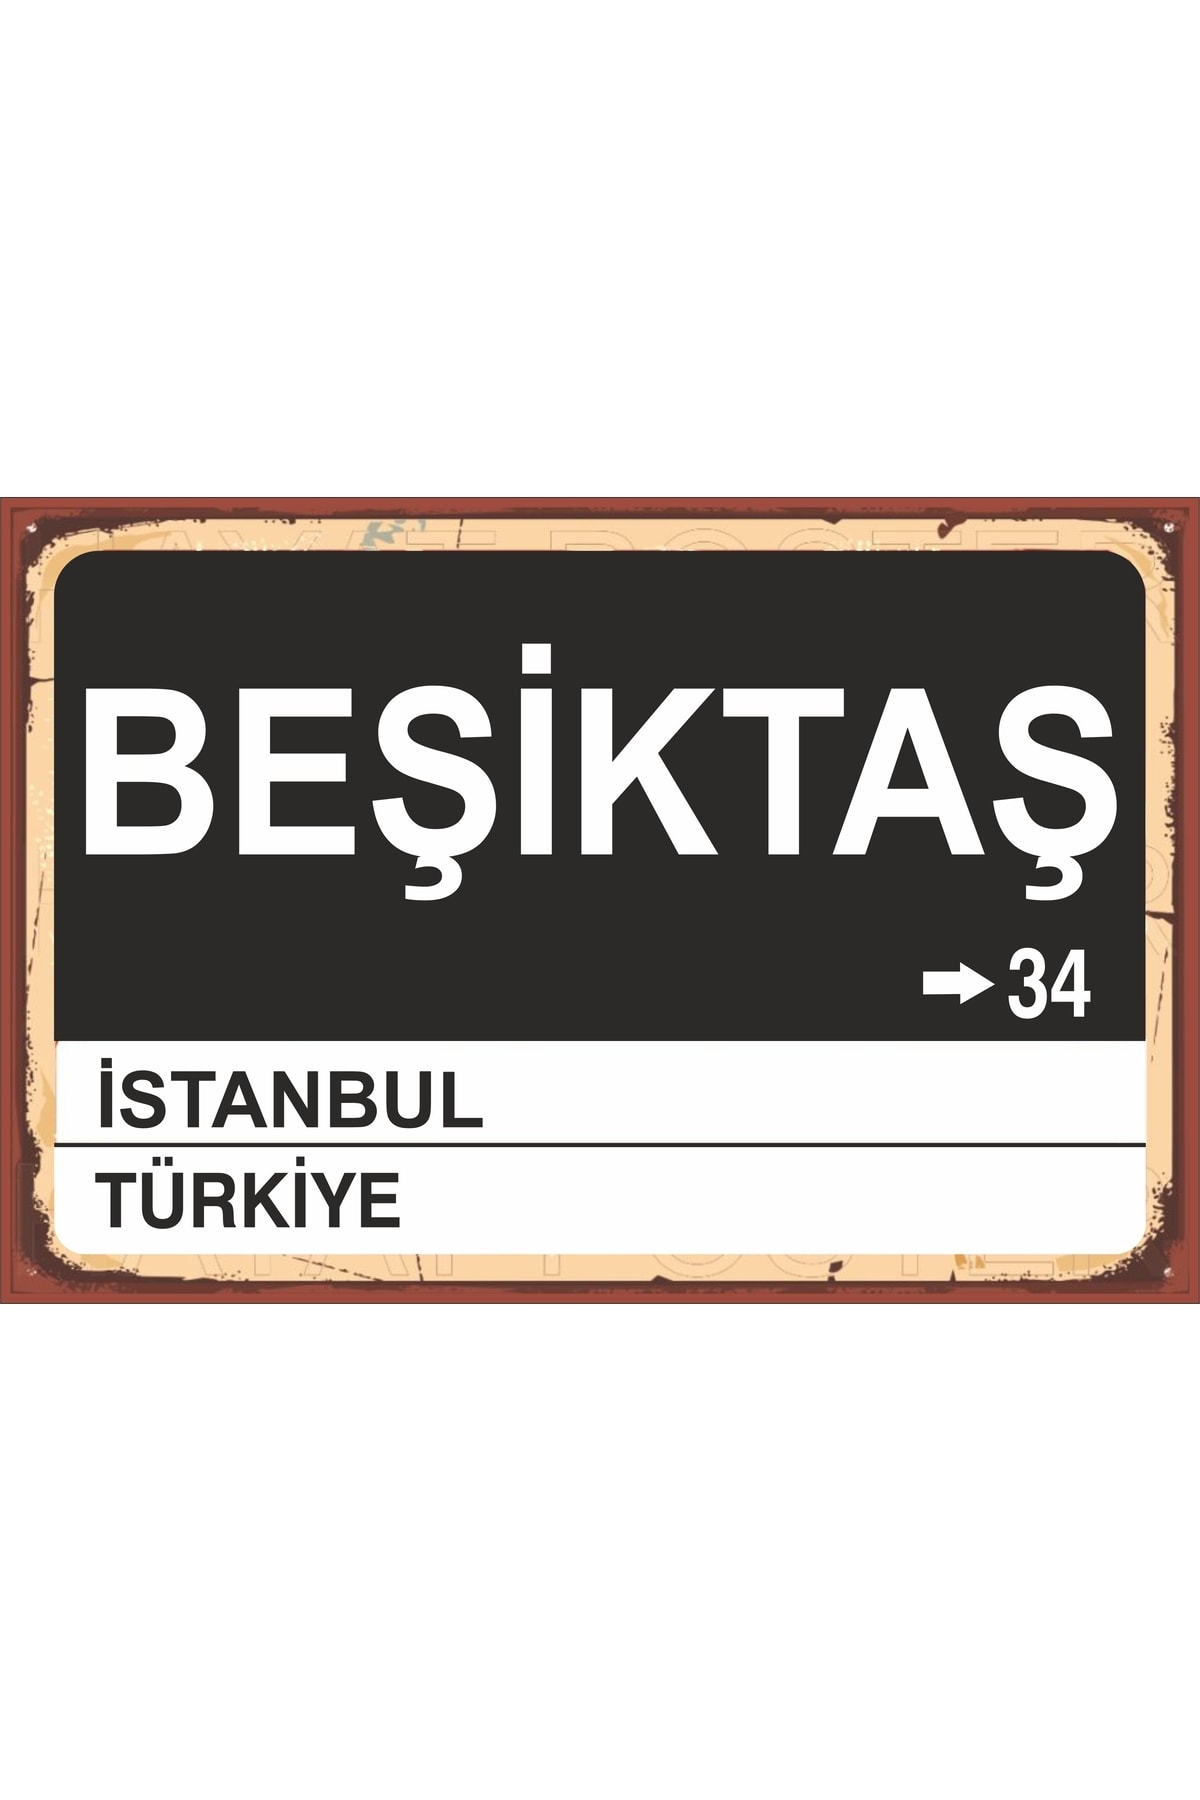 LİPYOS Beşiktaş Temalı Yön Tabelası Ahşap Tablo Poster A 20*30cm